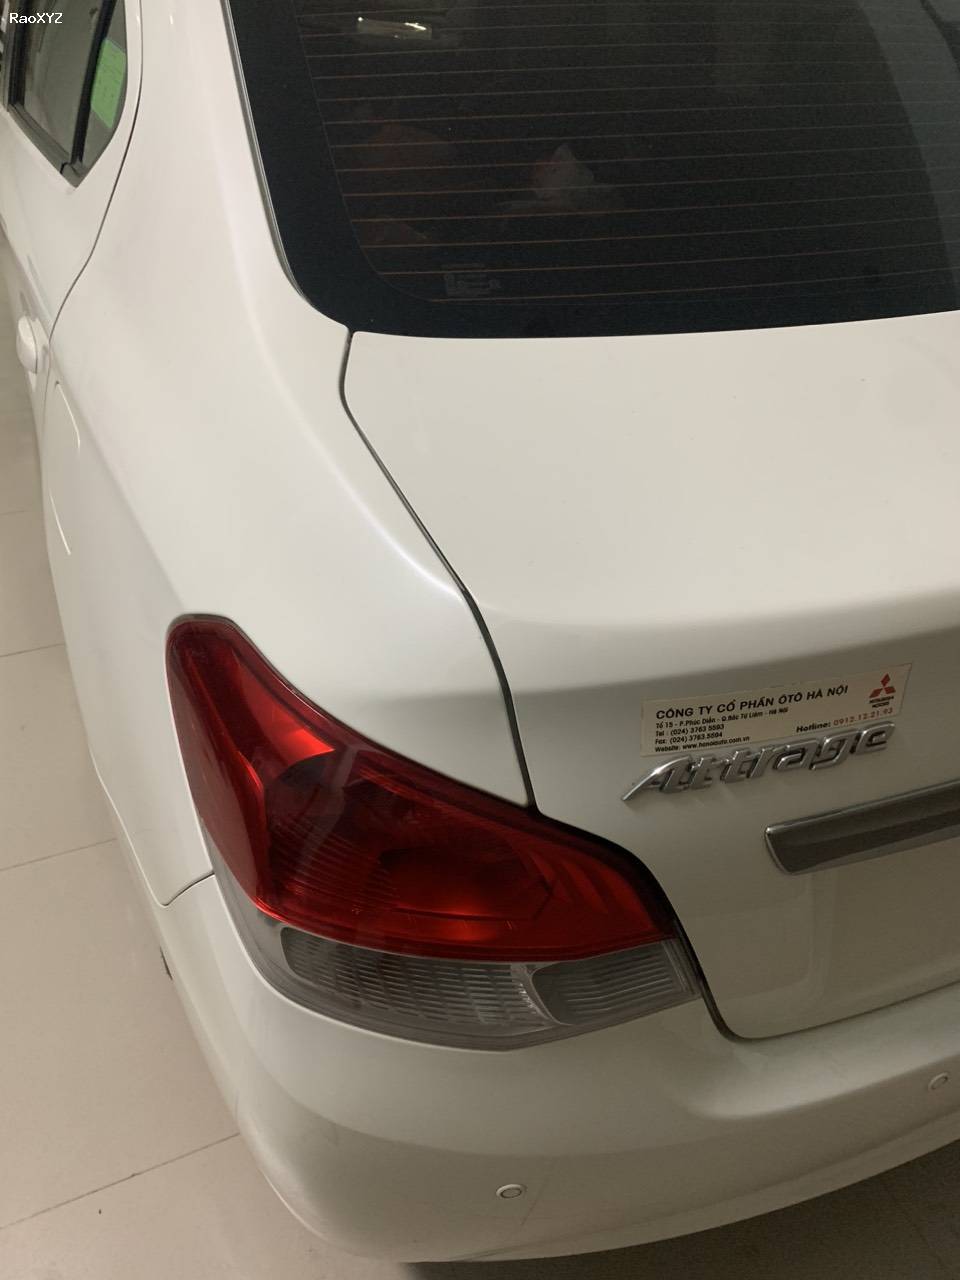 Bán ô tô Mitsubishi Attrage đời 2018 bản CVT Eco nhập khẩu nguyên chiếc từ Thái Lan; biển số VIP HA NOI.